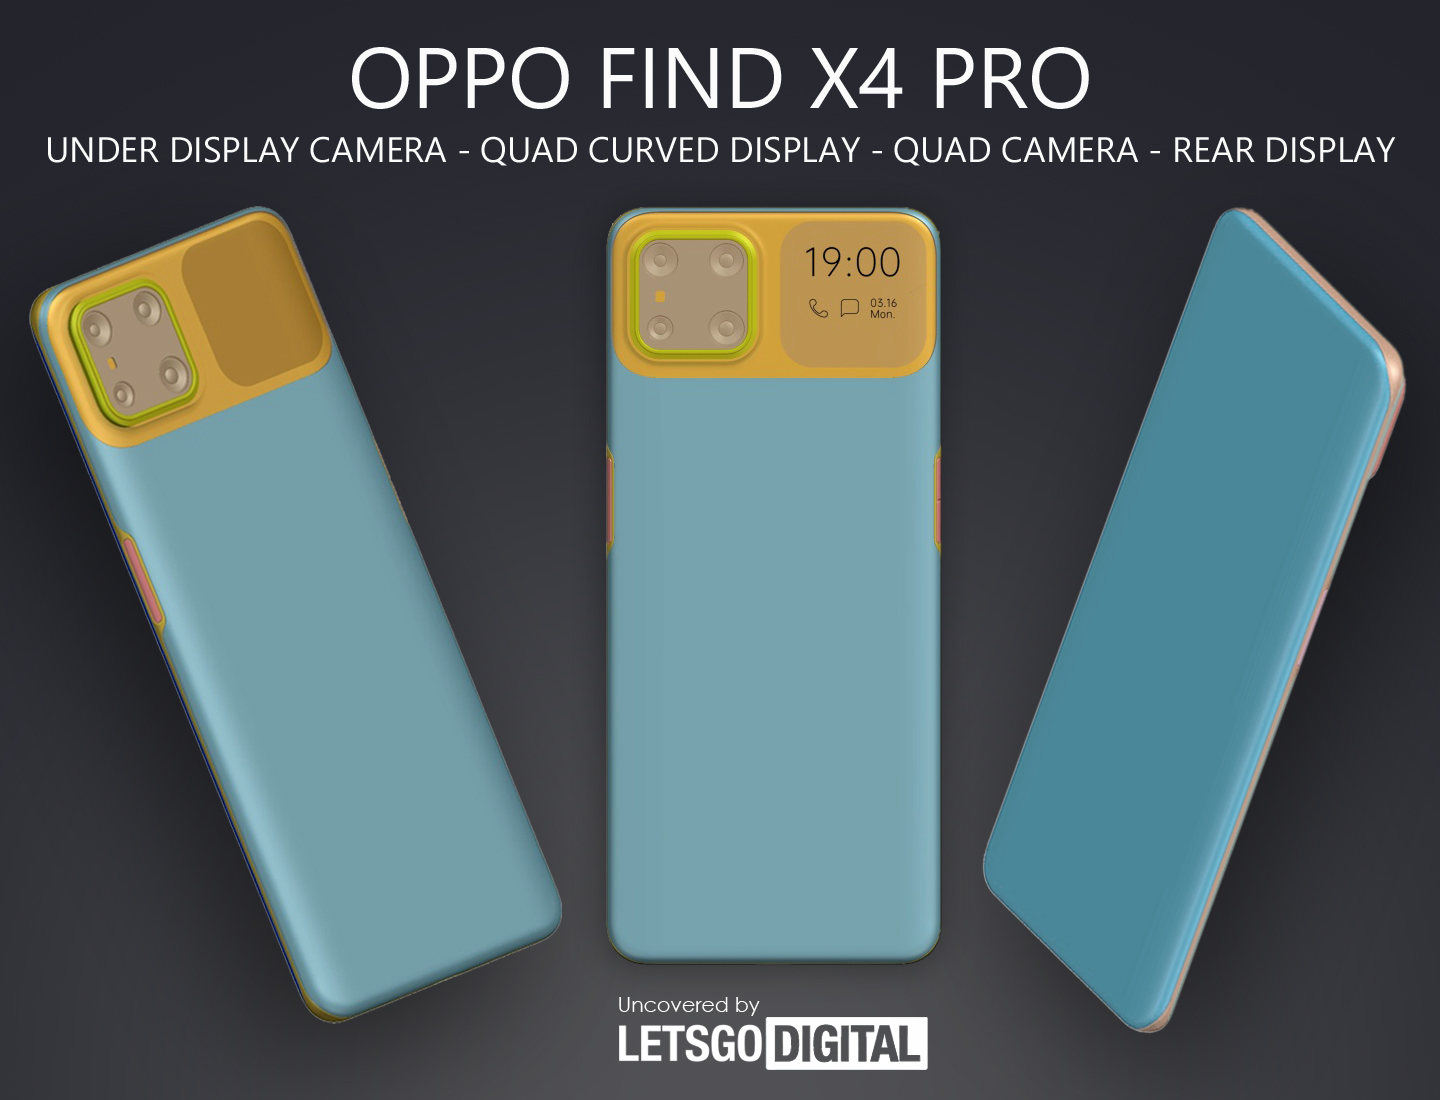 OPPO Find X4 Pro recevra un écran supplémentaire à côté de la caméra principale et un sous-écran avant